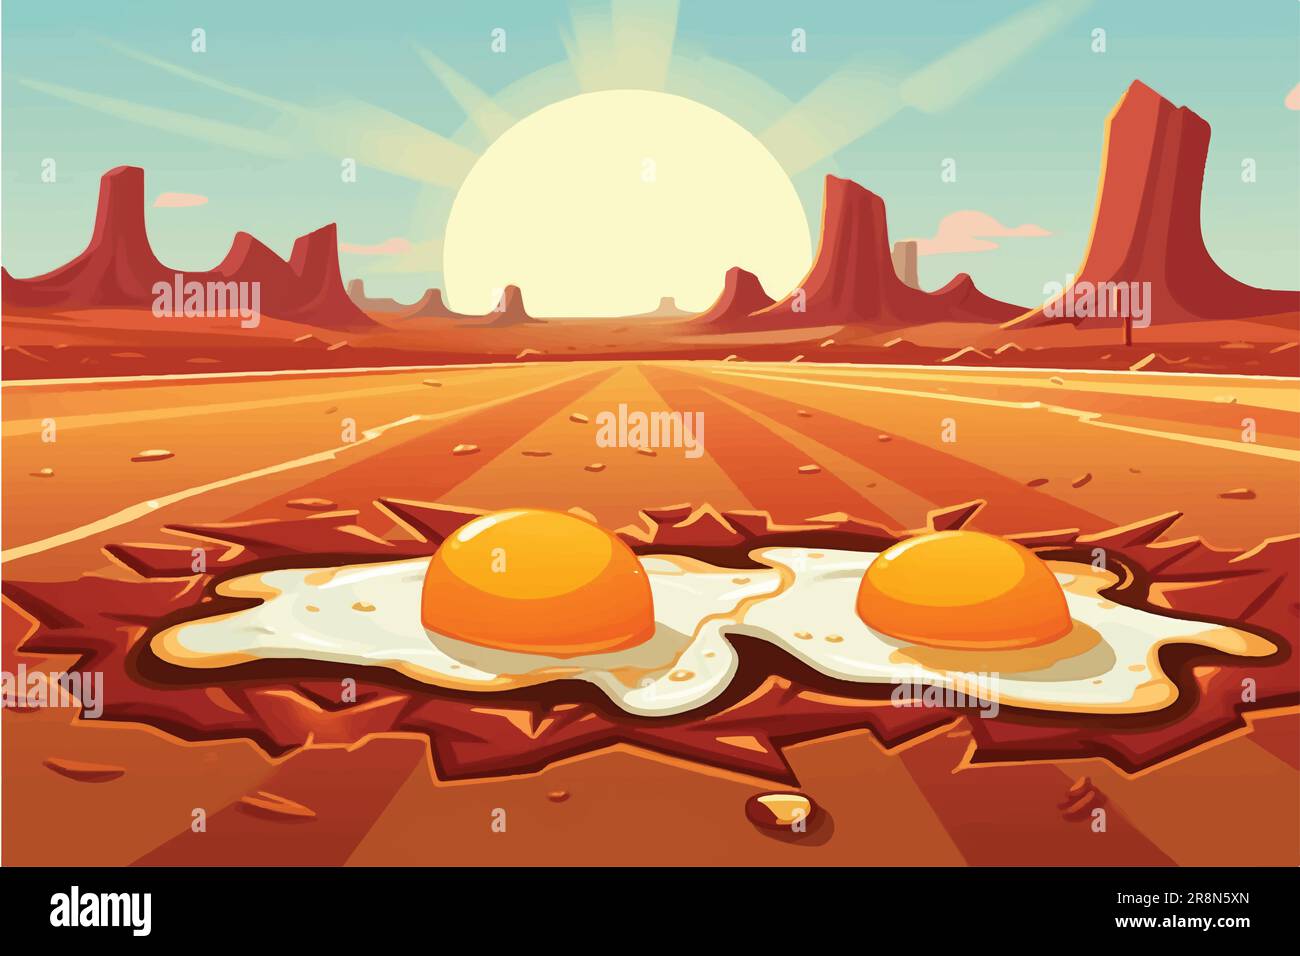 Cartoon-Vektordarstellung von "Sizzling Vorsicht", "Egg Pommes" auf einer glühenden Wüstenstraße unter heißer Sonne Stock Vektor